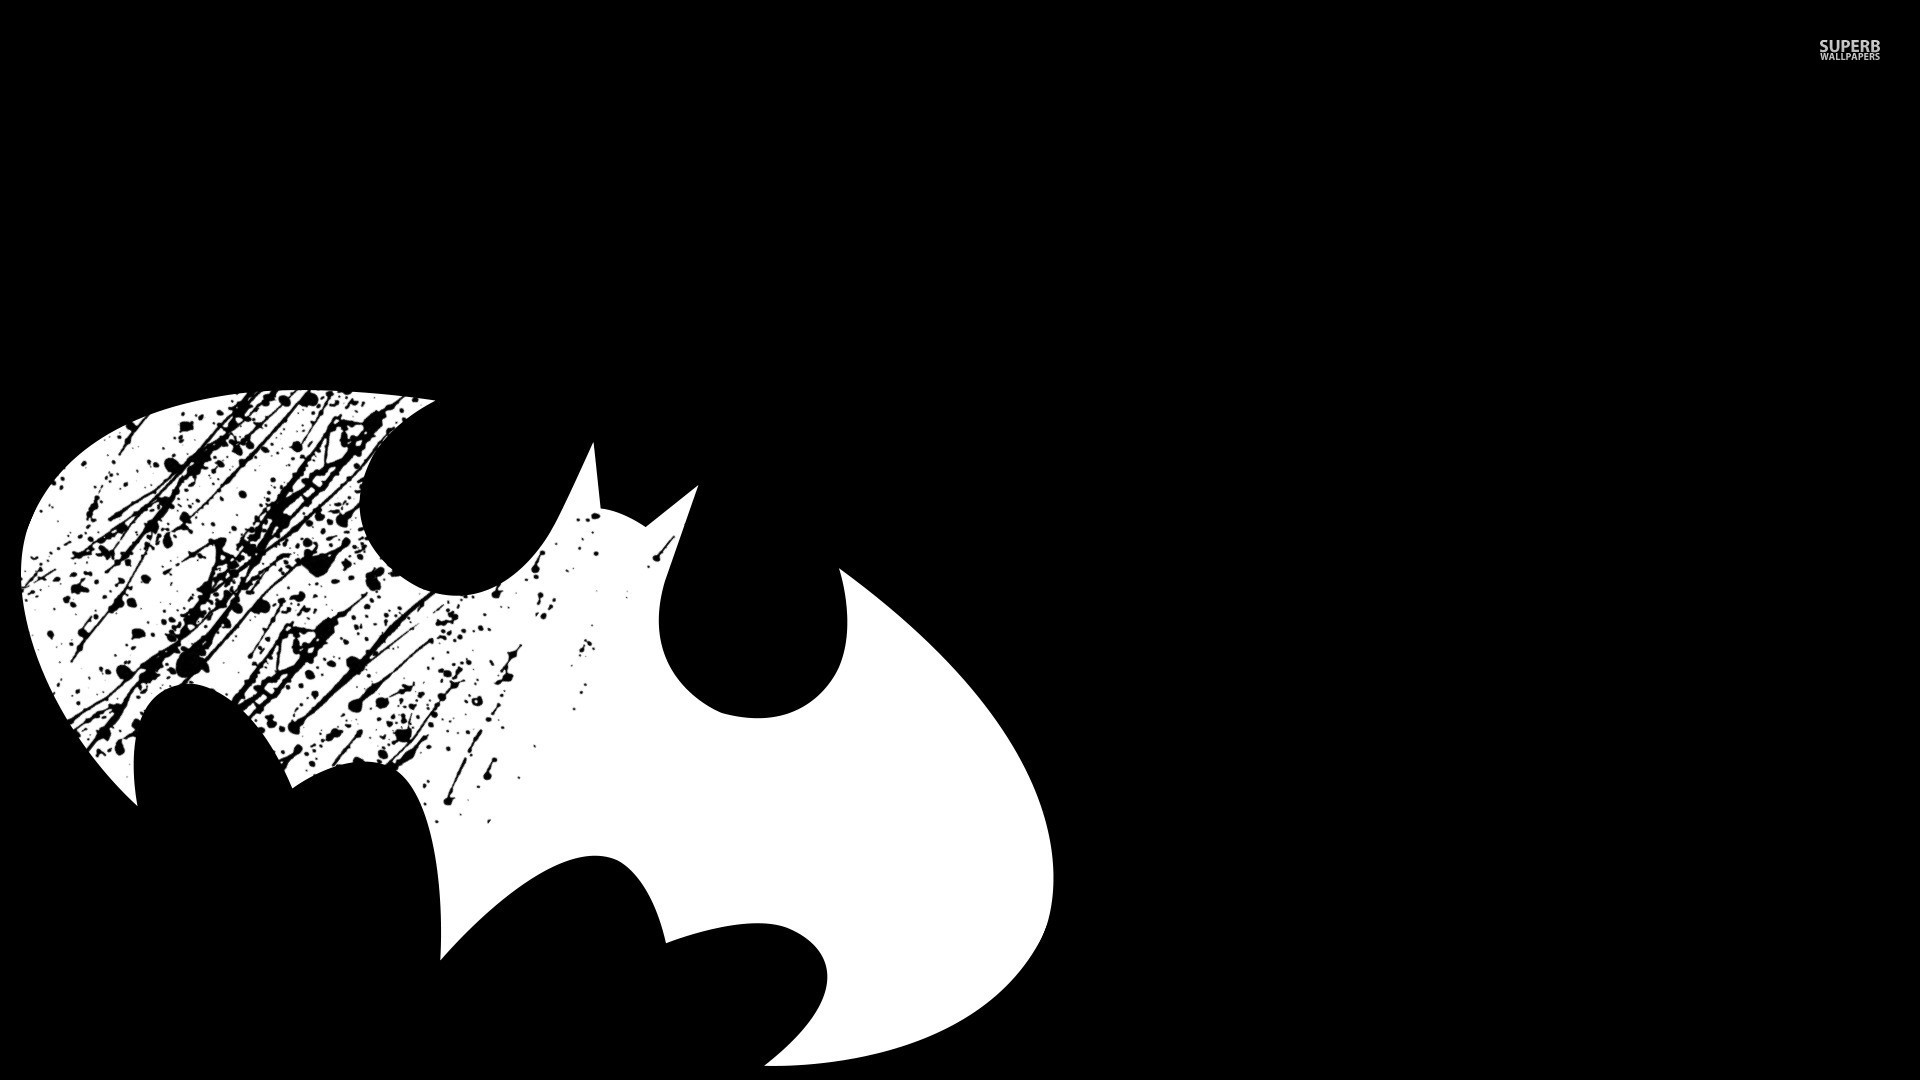 Hình nền Batman 4k ultra hd: Fan của siêu anh hùng Batman, hãy cùng khám phá bộ sưu tập hình nền với chất lượng 4k ultra hd cho màn hình điện thoại và máy tính của bạn. Những hình ảnh đầy sức mạnh và cuốn hút chắc chắn sẽ thu hút bạn ngay từ cái nhìn đầu tiên.